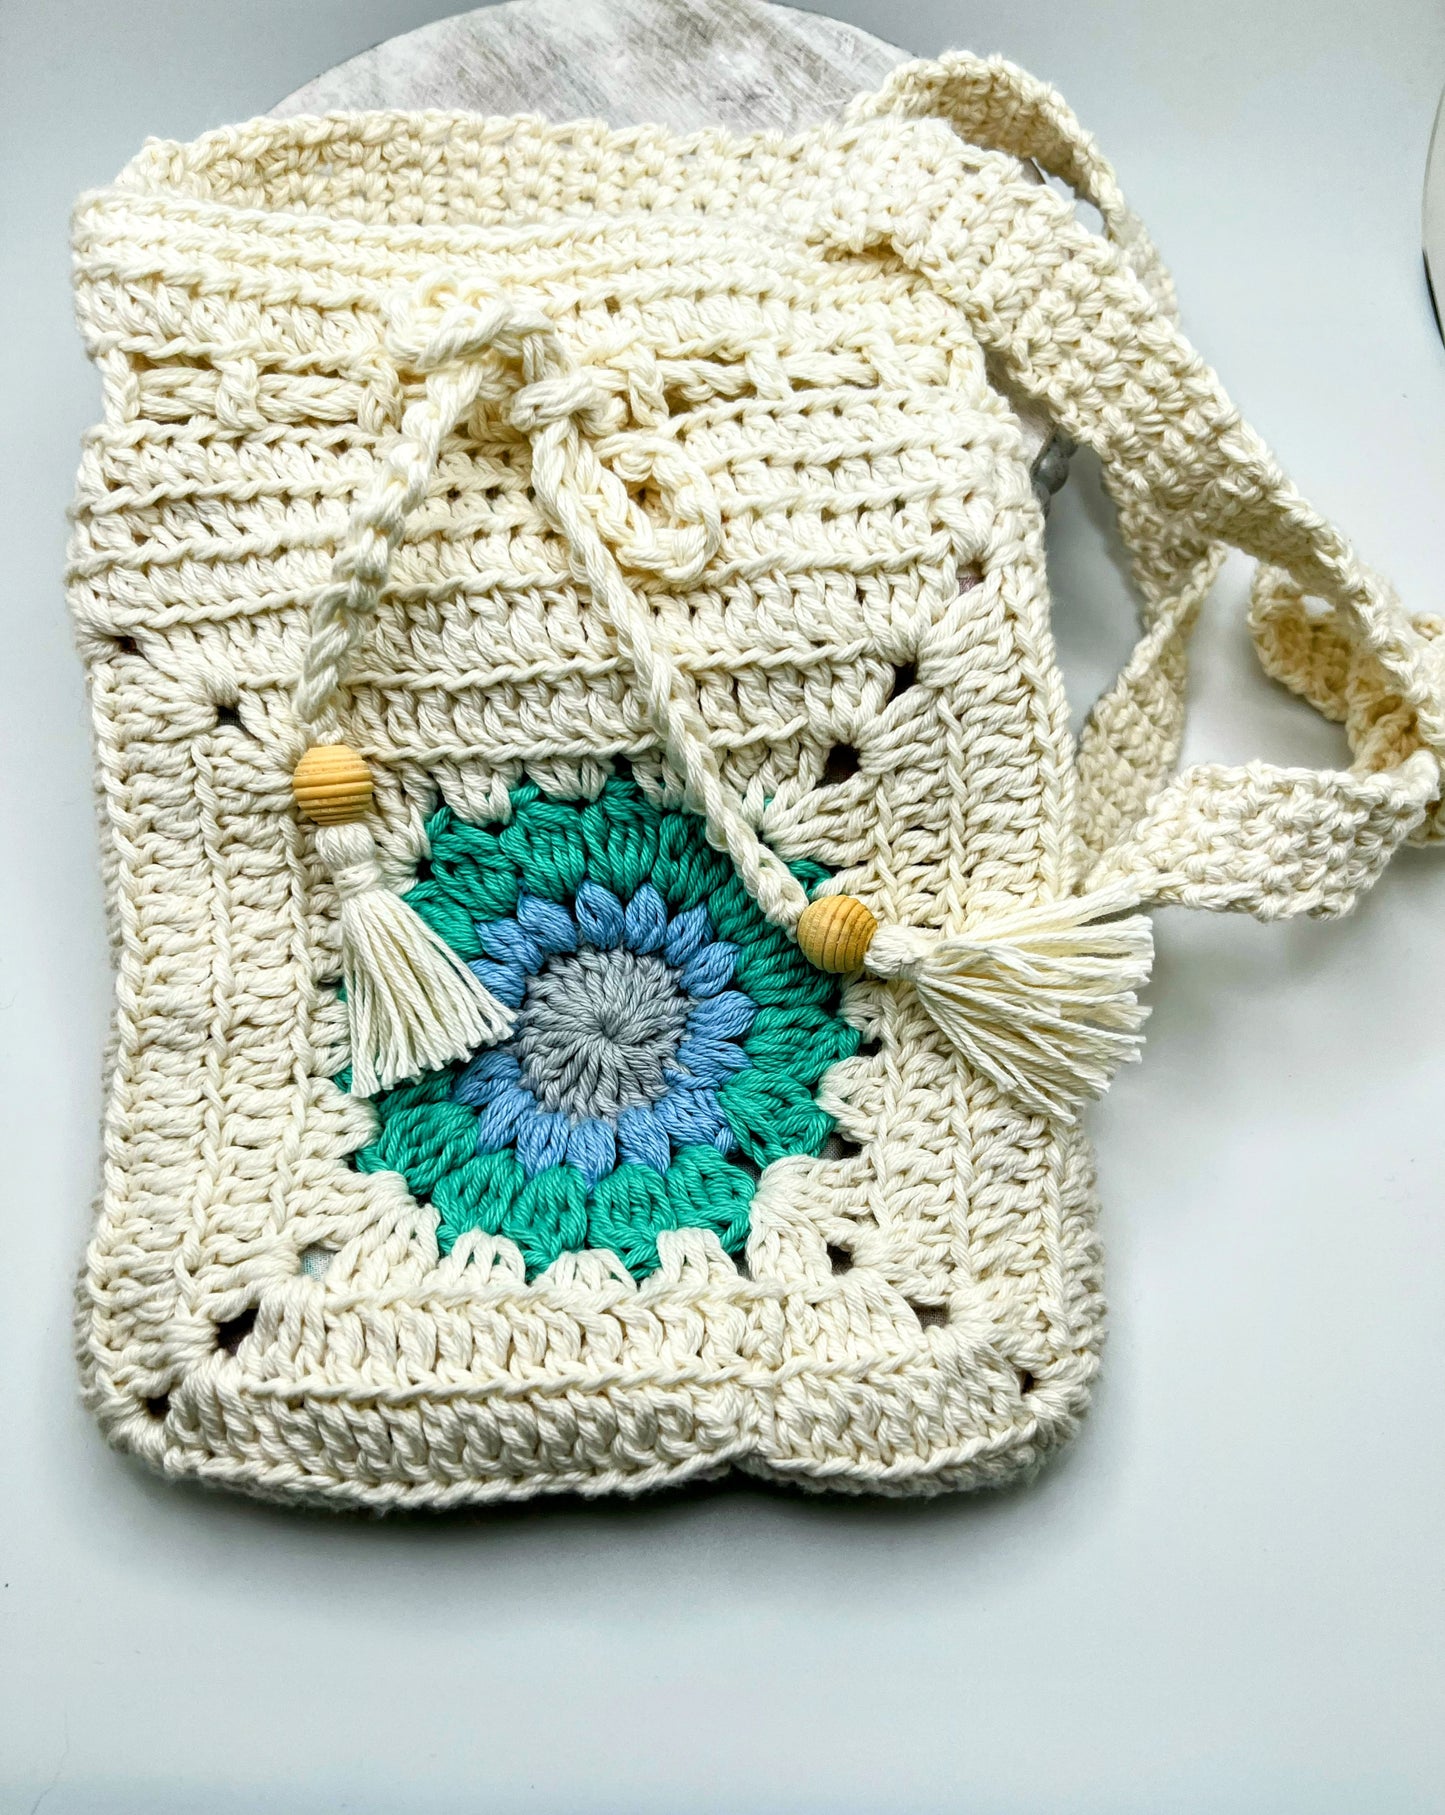 Crochet Bag With Light Blue Flower- For Girls & Teens